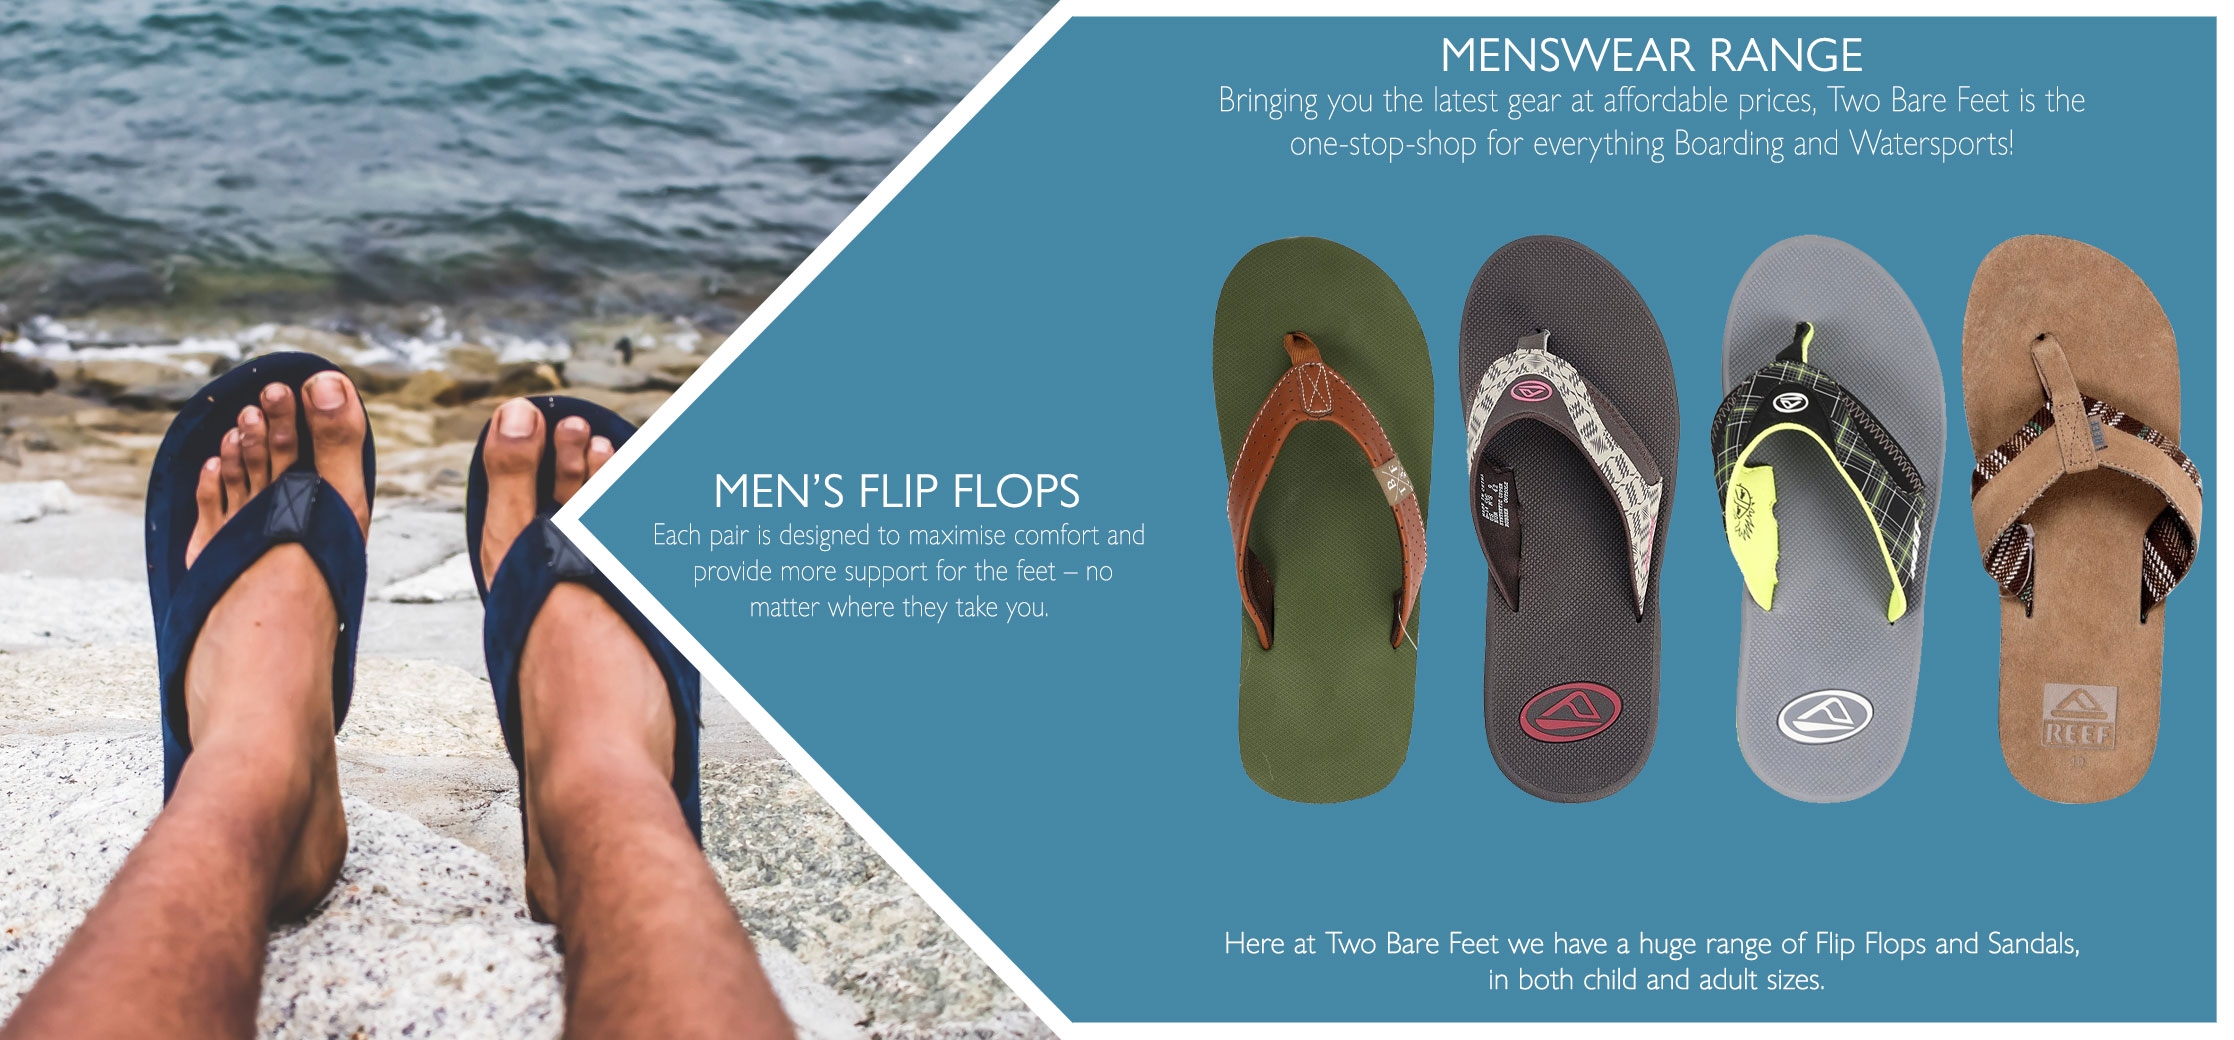 UK men's beach flip flops & sandals